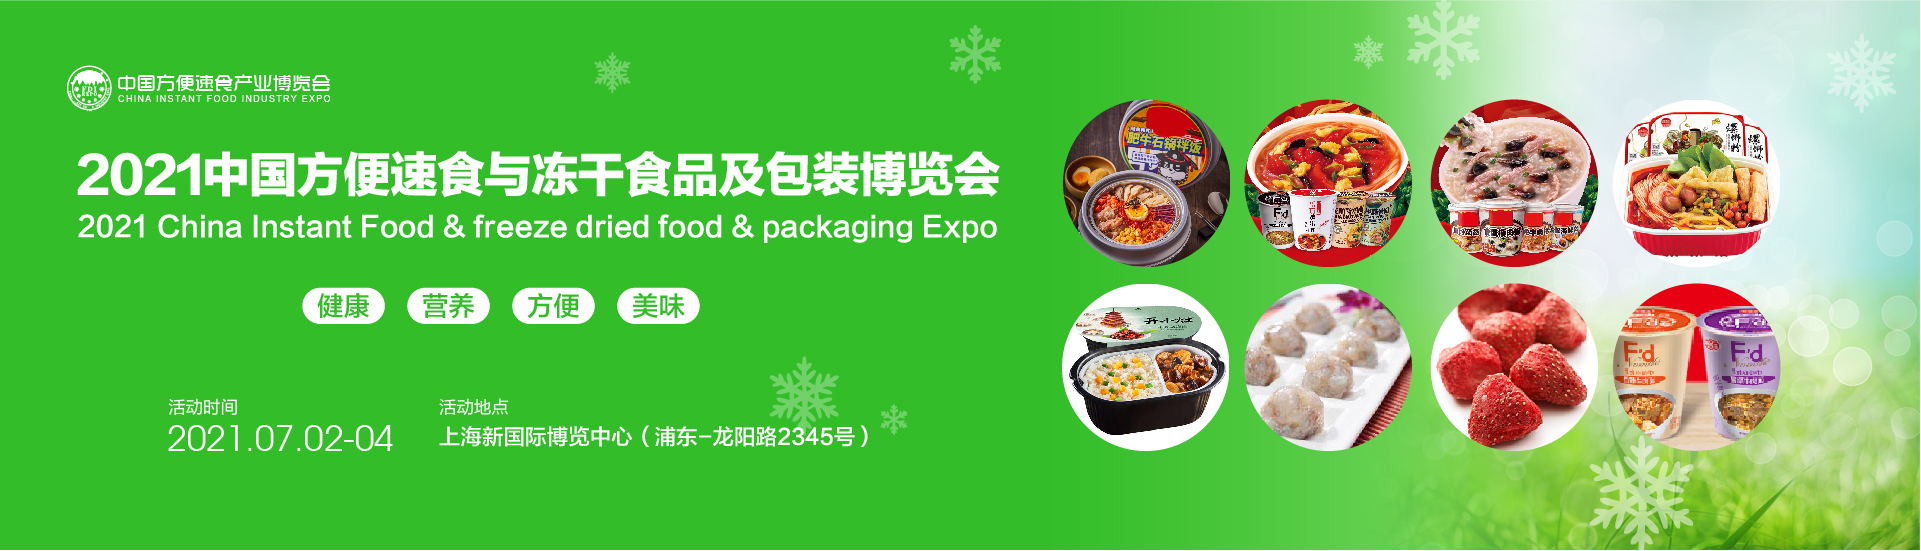 2021中国方便速食与冻干食品及包装博览会